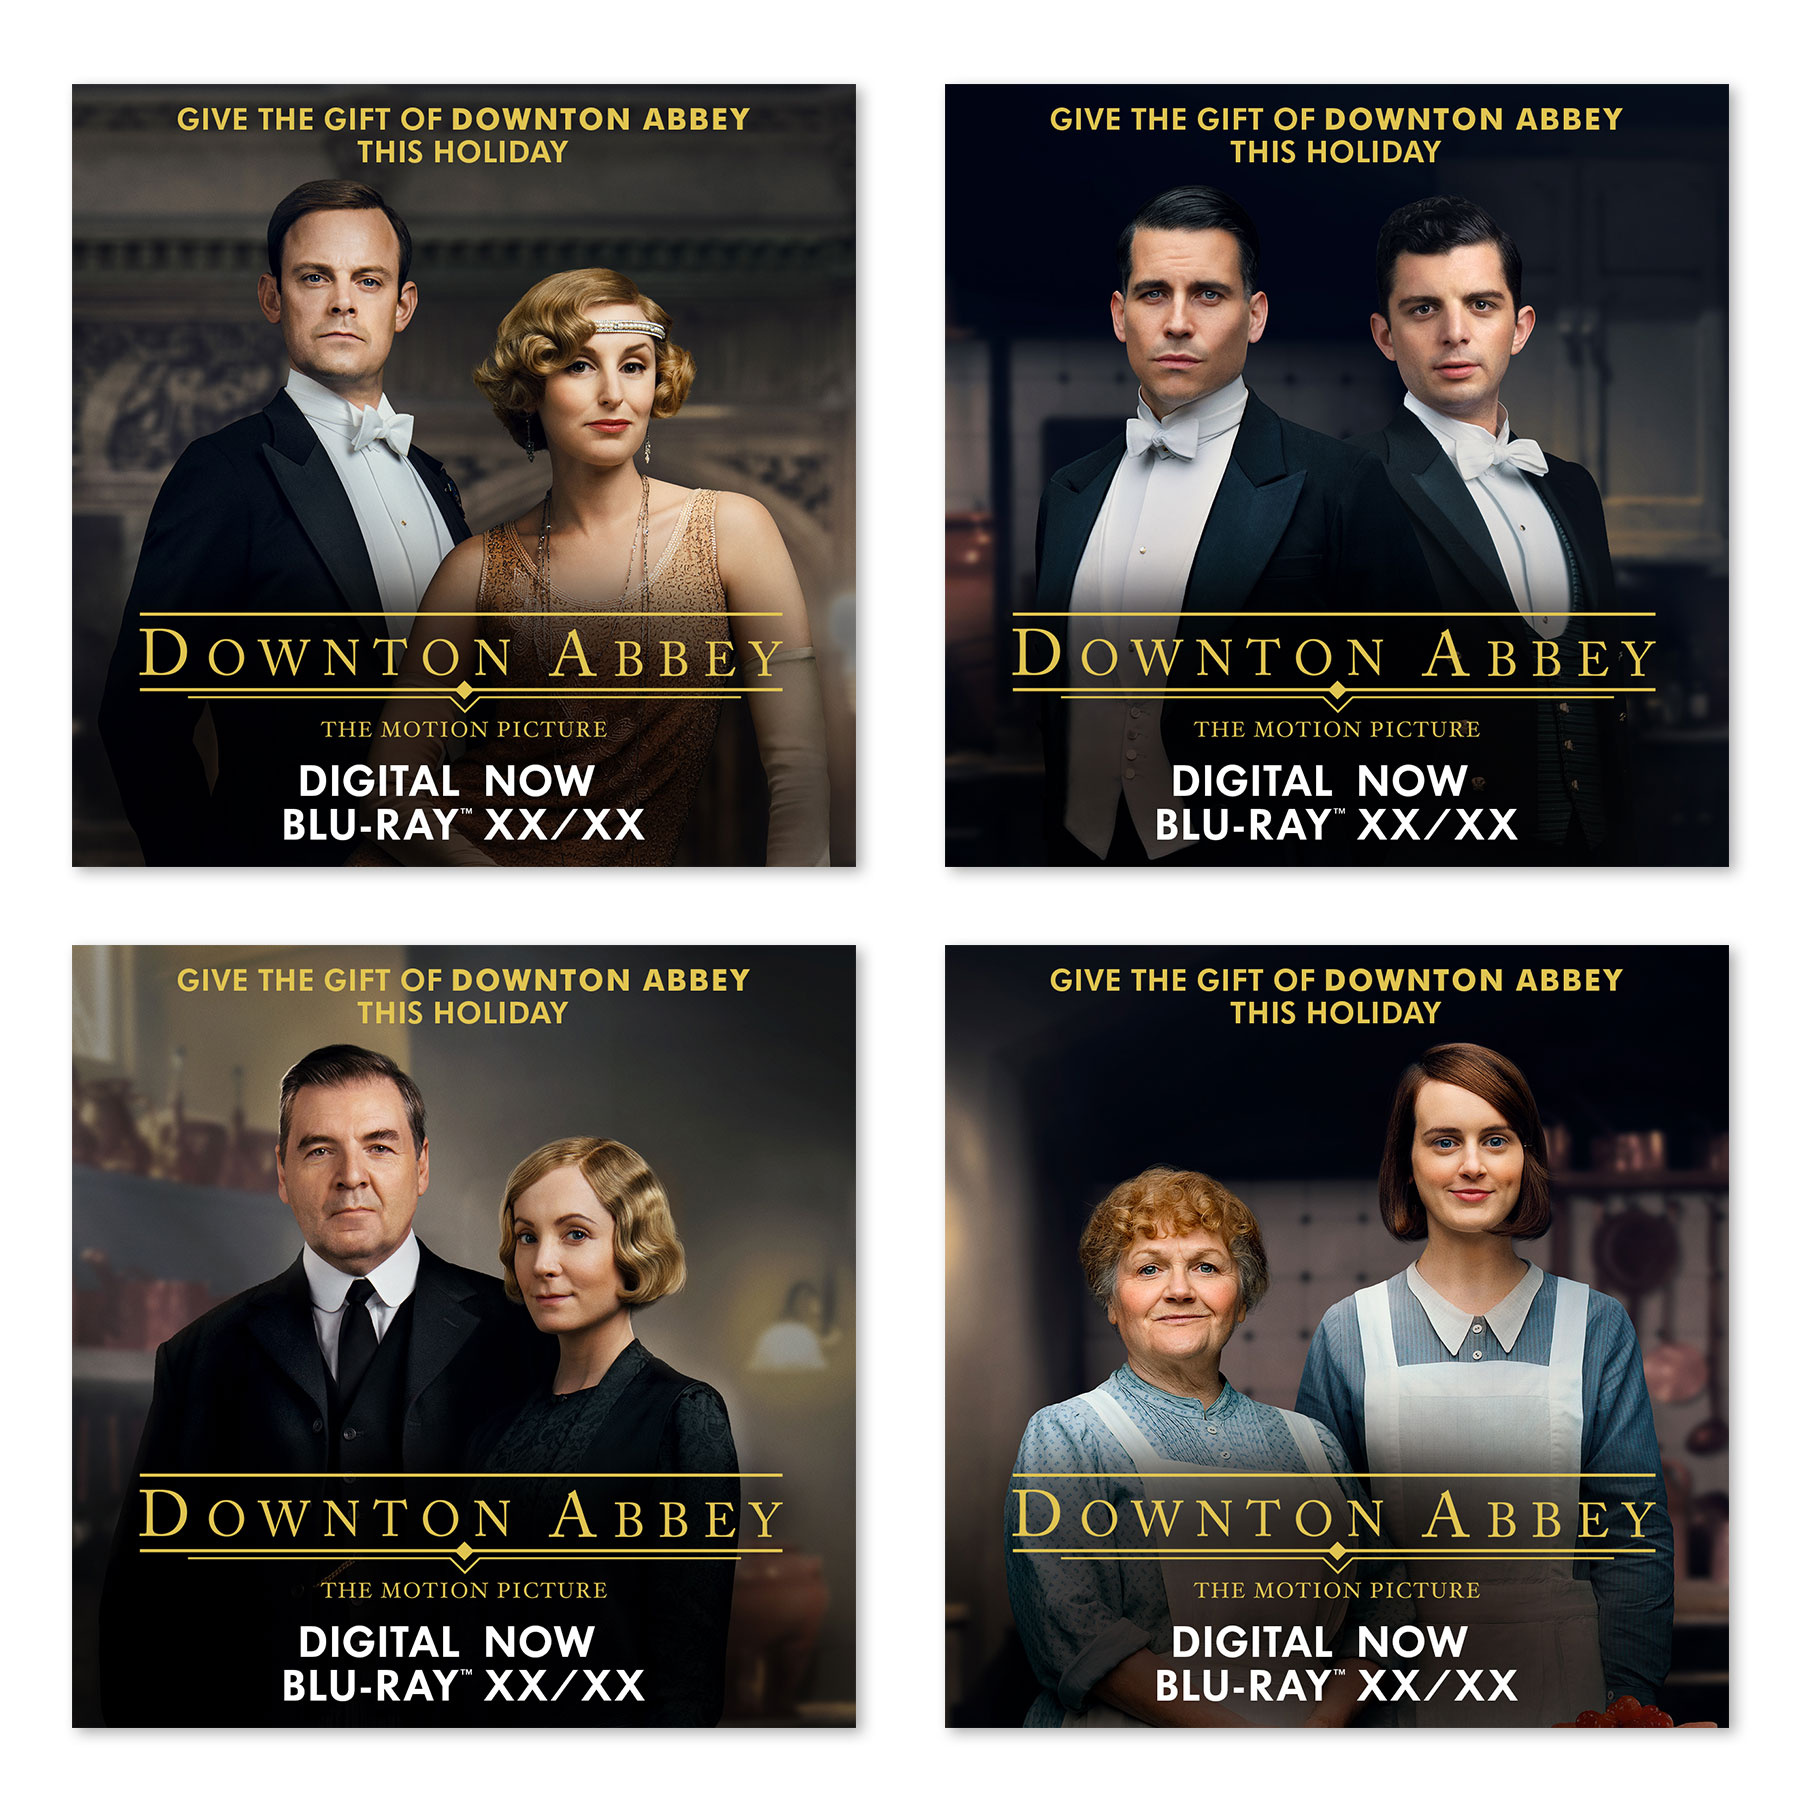 Downton Abbey Digital Ads